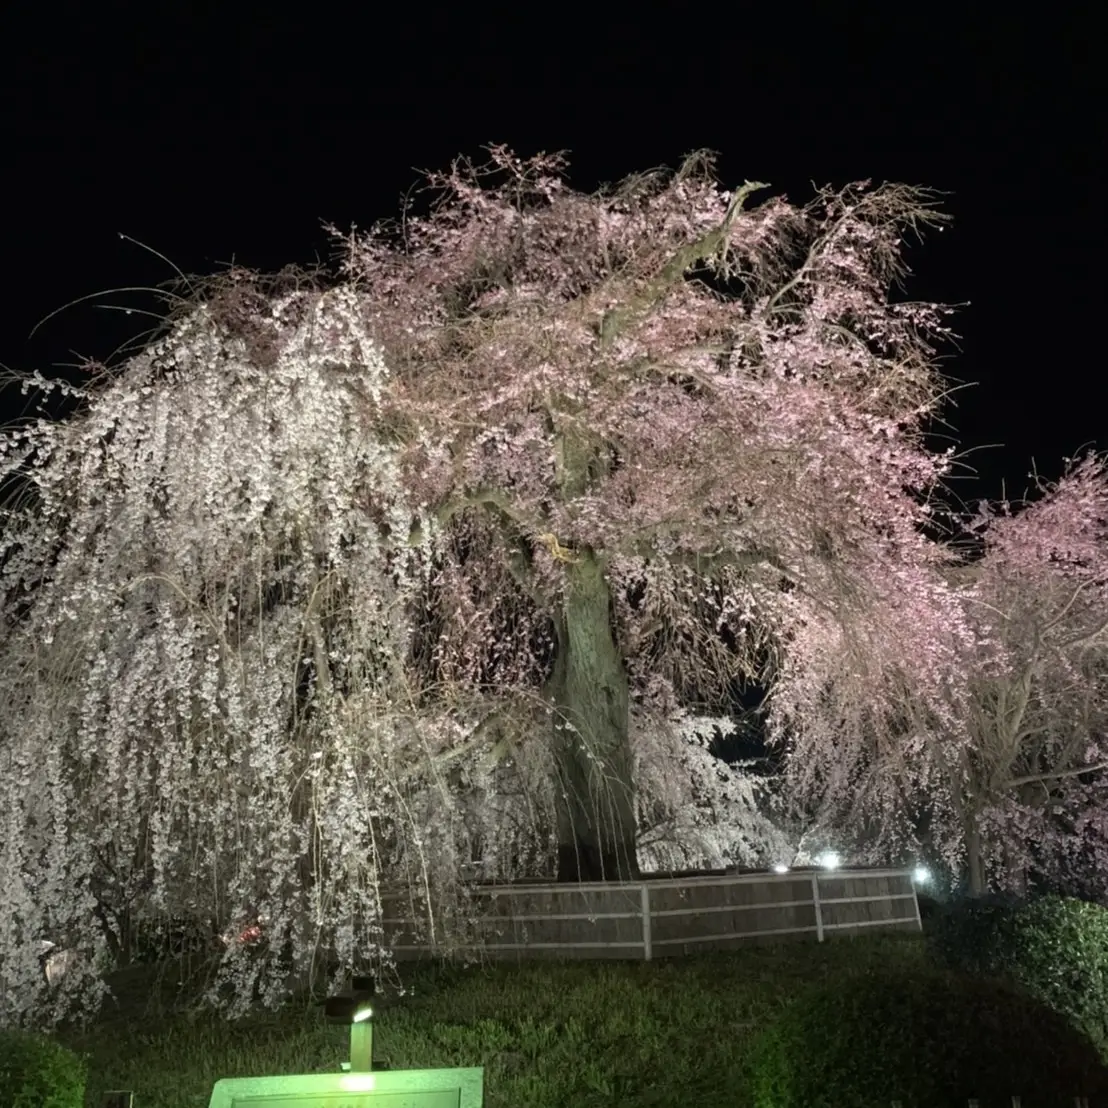 桜の木の上に宿る精霊たち | www.hurdl.org